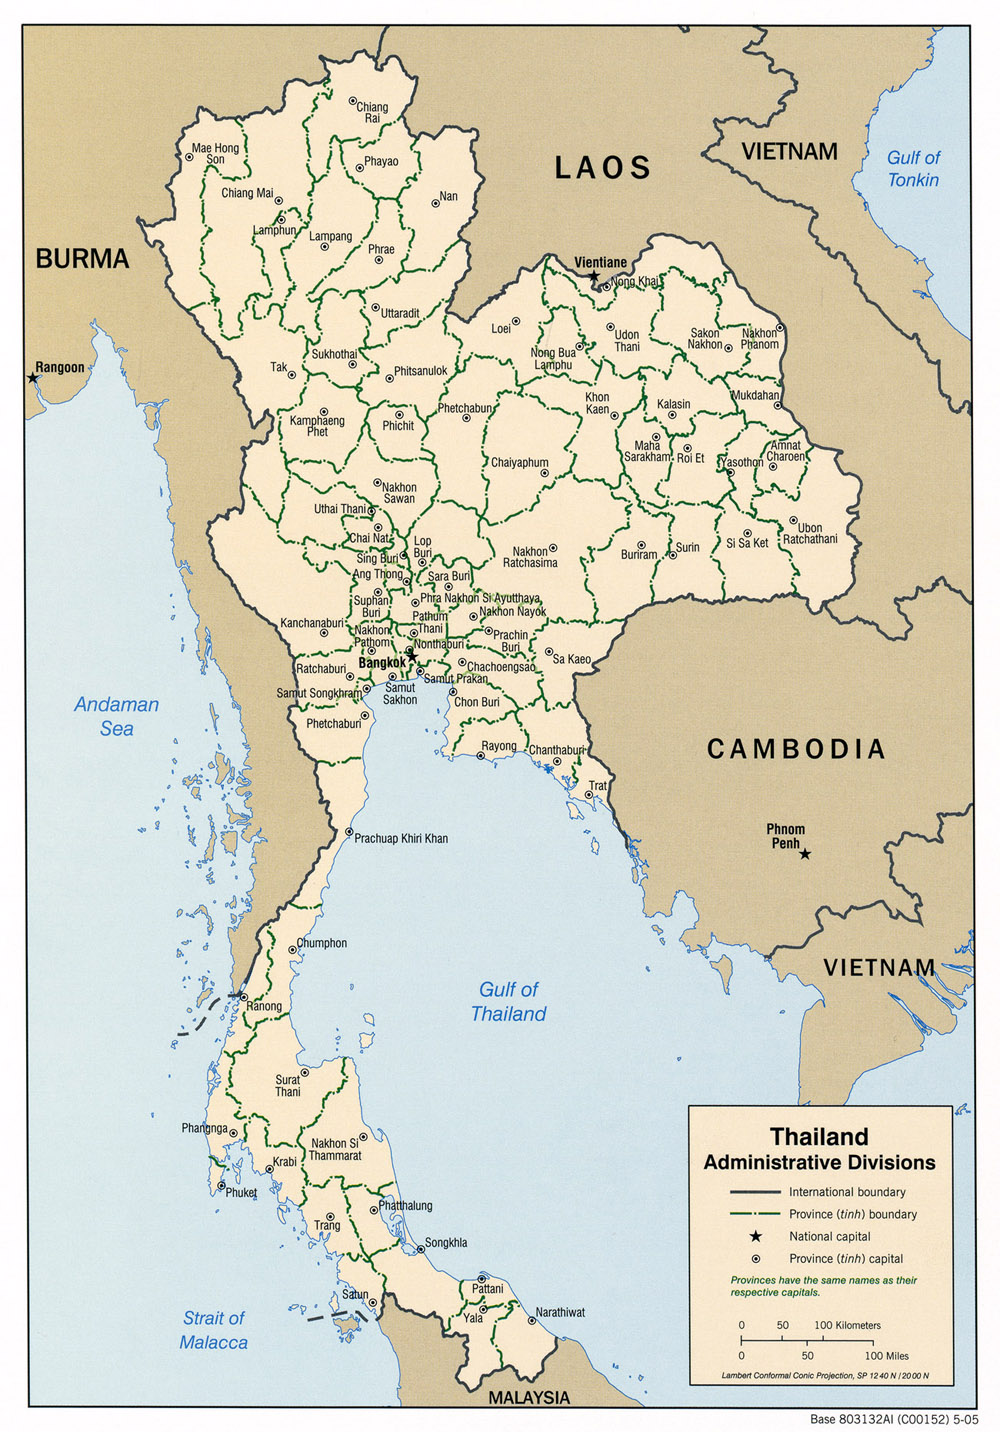 Mapa de las Divisiones Administrativas de Tailandia